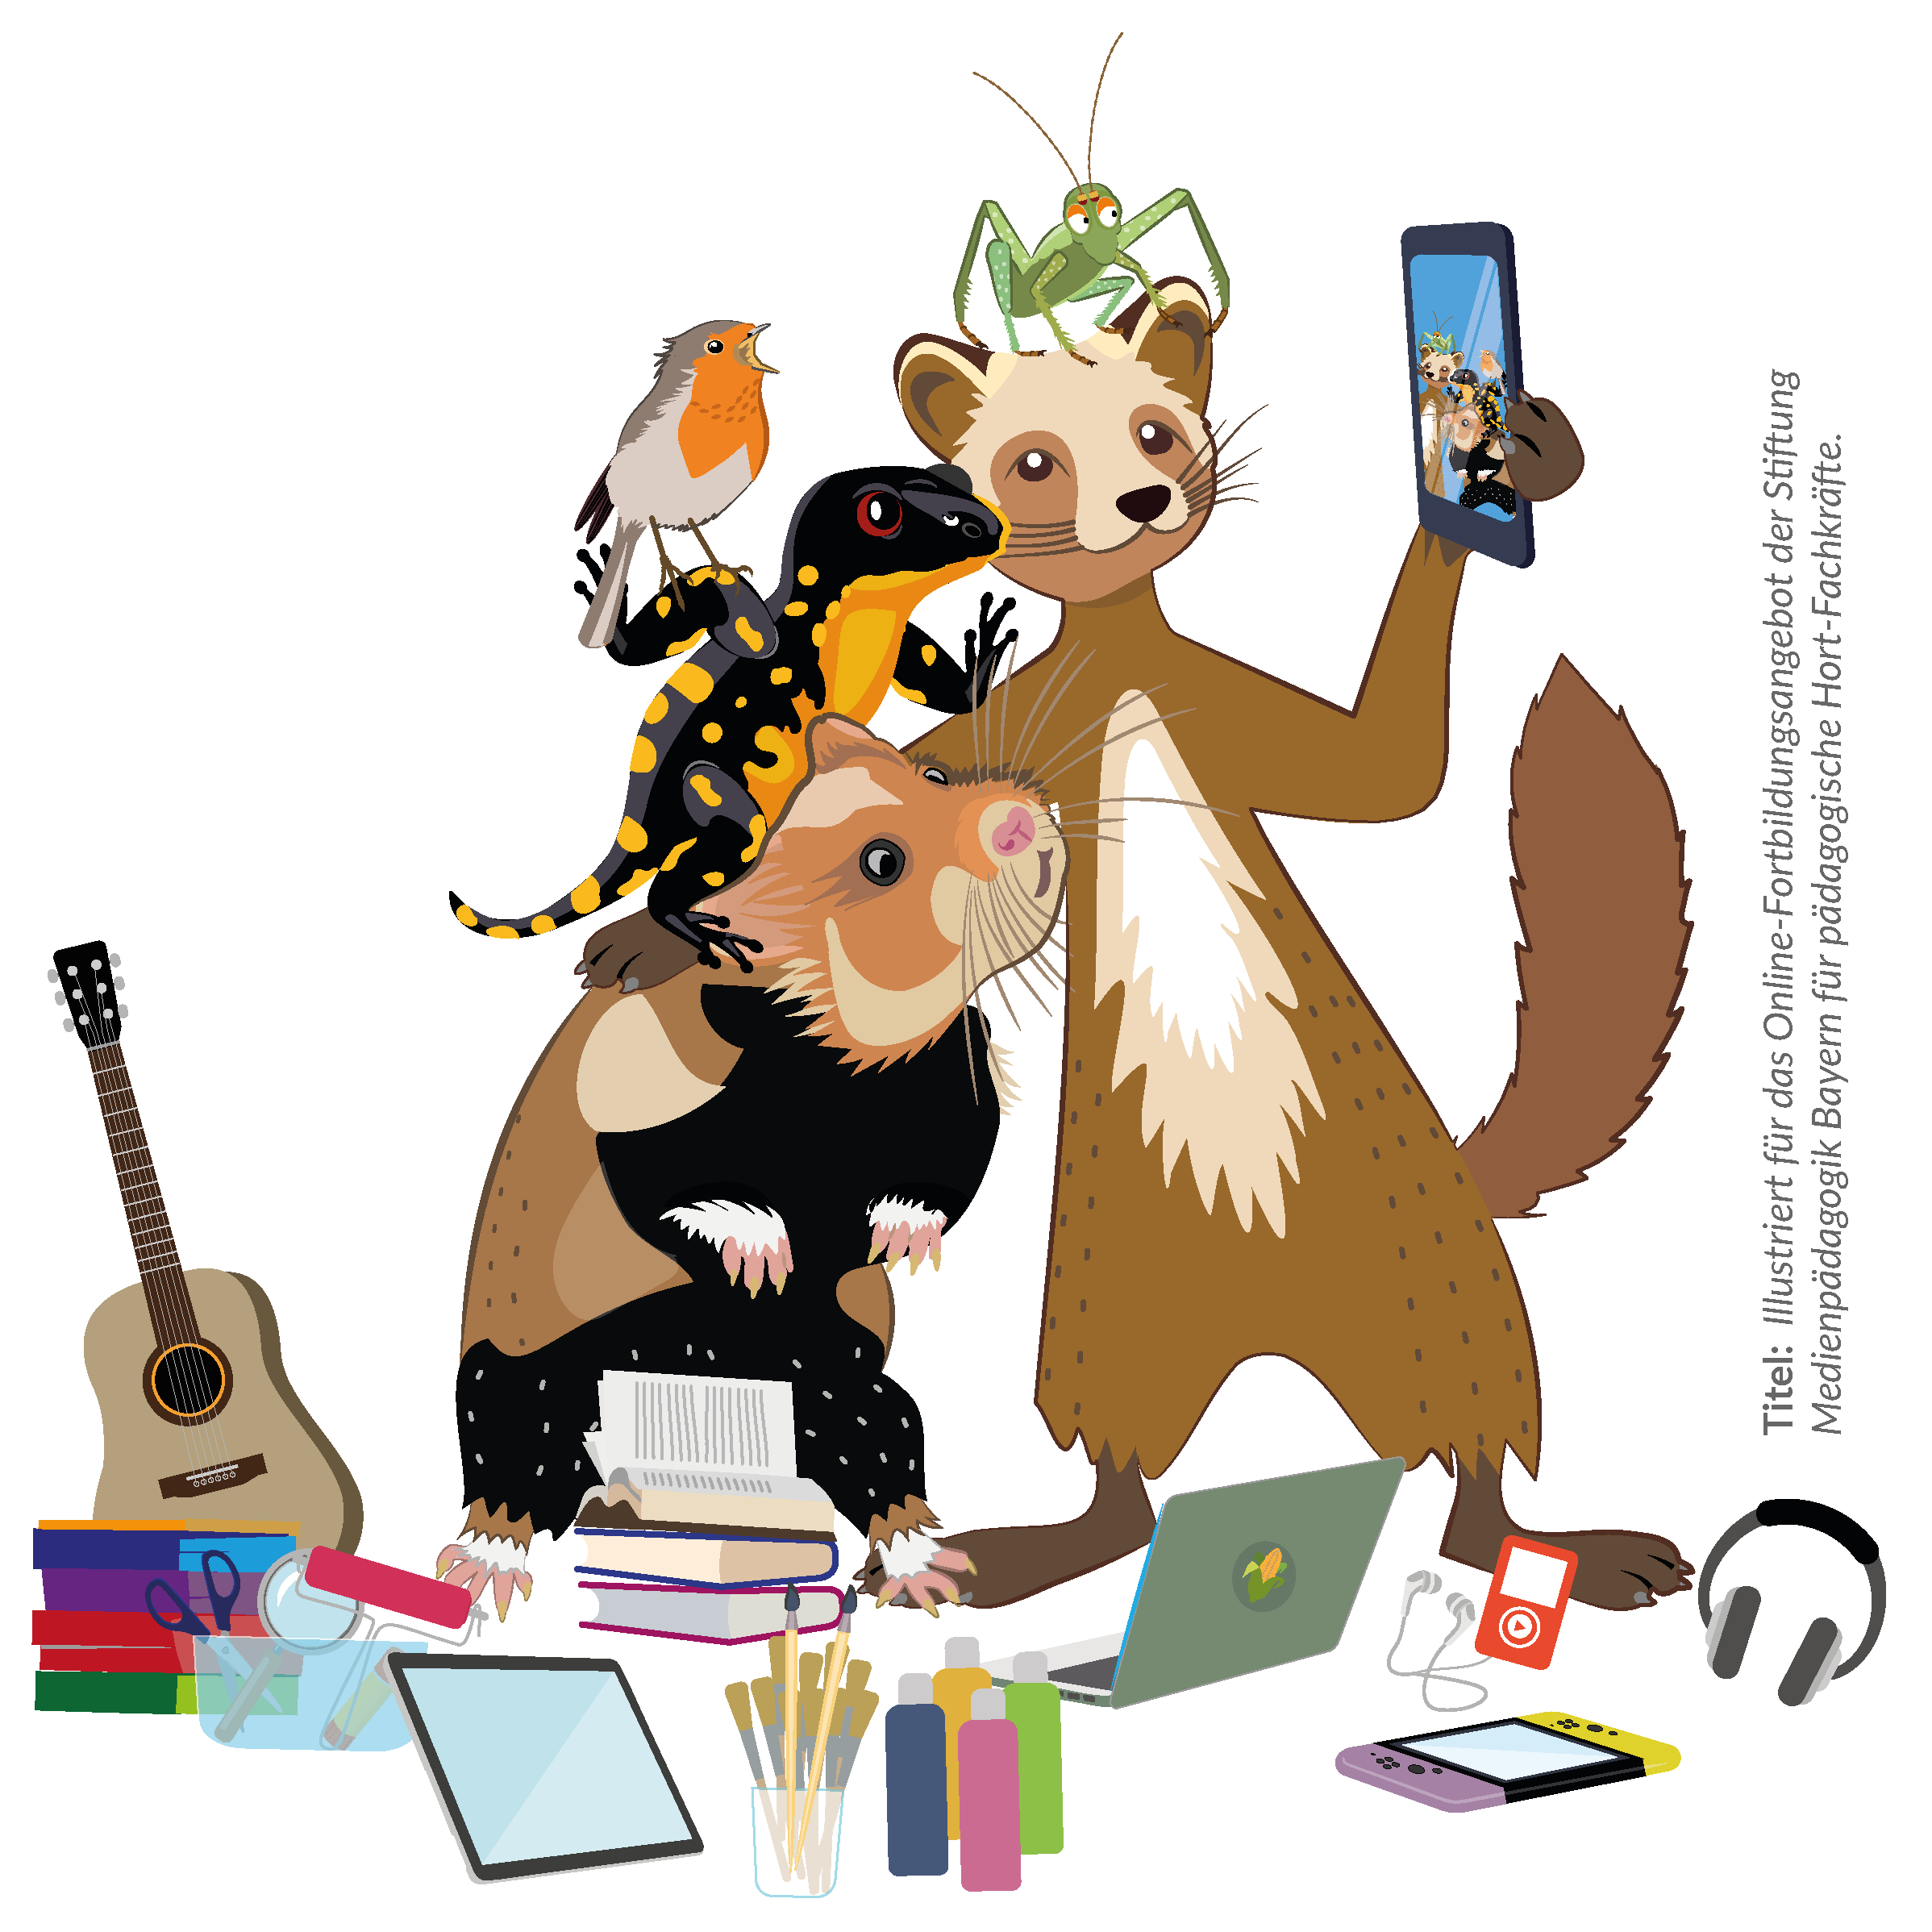 Lernmedien Illustration | Weiterbildung, Tiercharakter: Die heimischen Tiere Baummarder, Feldhamster, Salamander, Rotkehlchen & Grille posen für ein Selfie